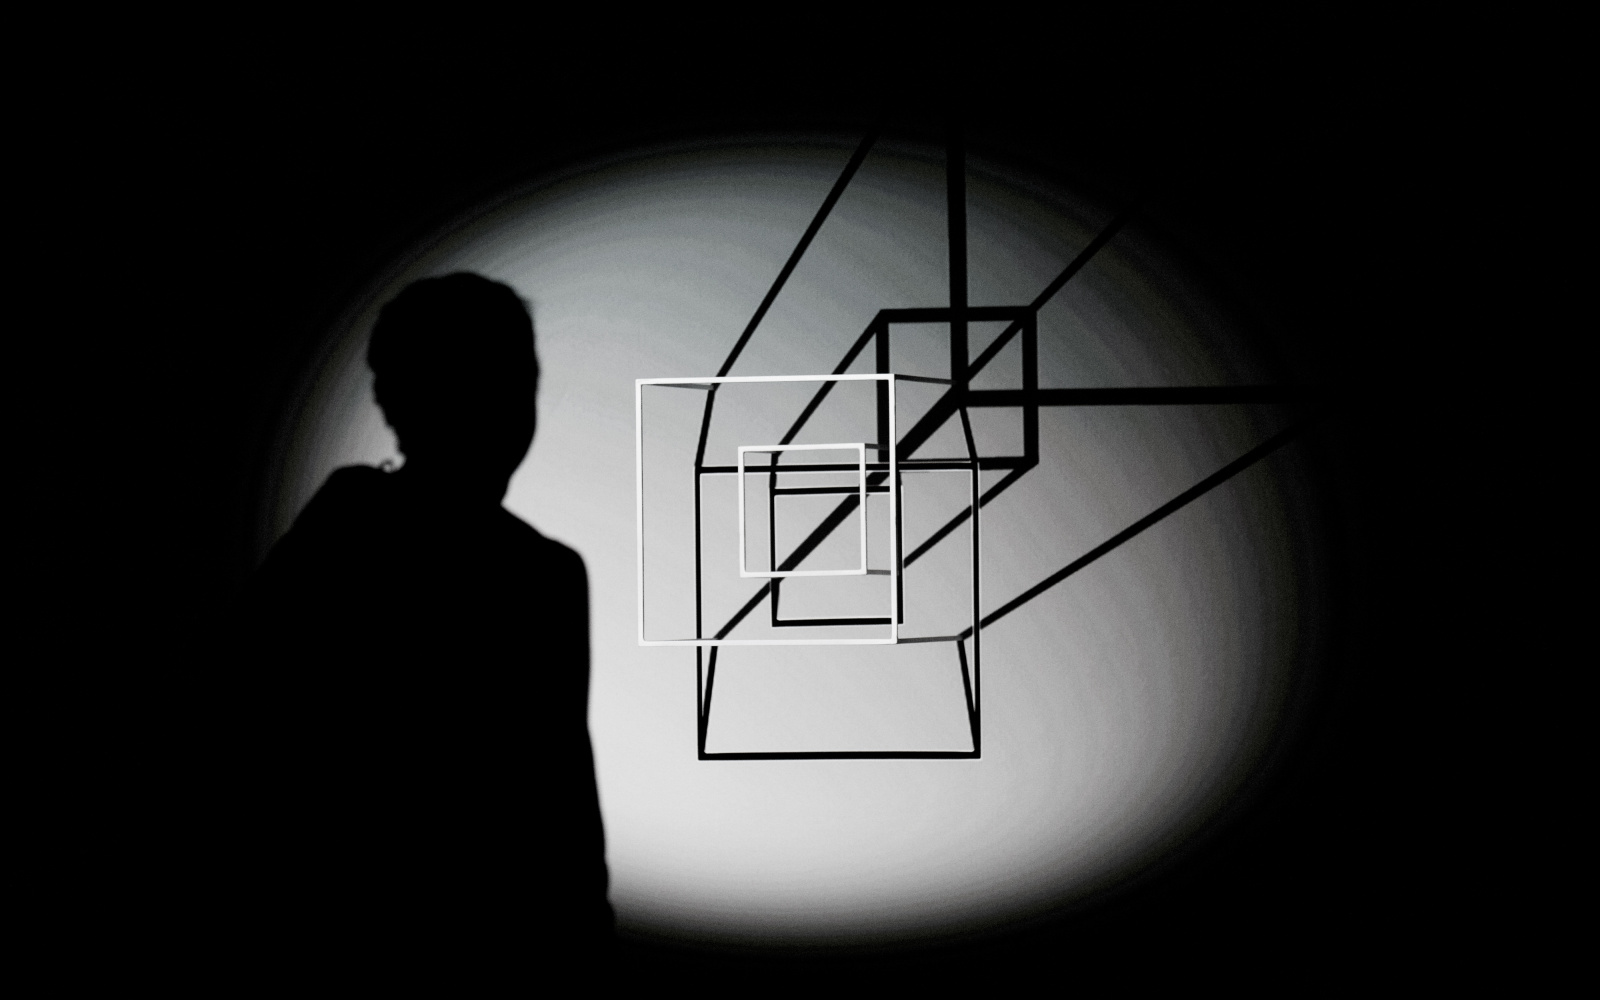 In einem Lichtkegel sieht man den Schatten einer Person und zwei weiße Vierecke, die ebenfalls einen schwarzen Schatten an die Wand werfen